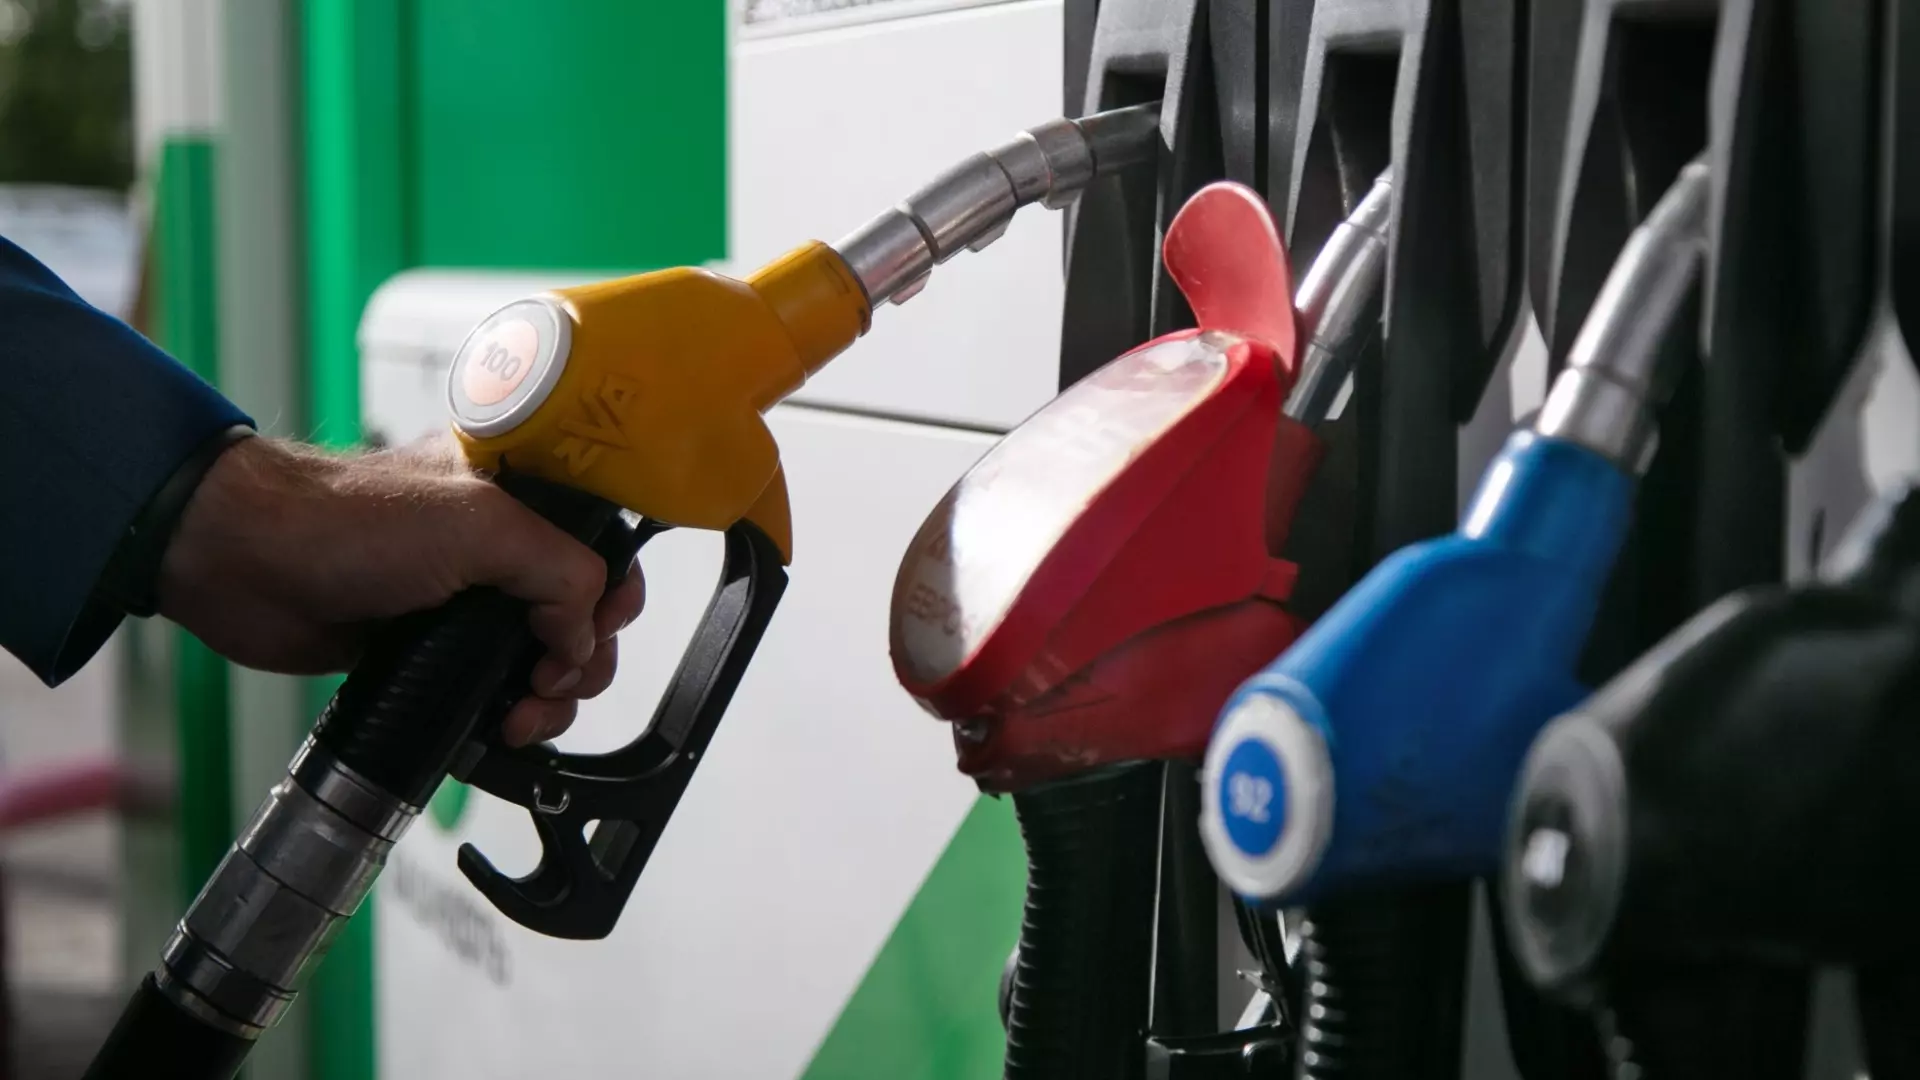 Ханты-Мансийск лидер по росту цен на бензин за неделю среди крупных муниципалитетов Югры